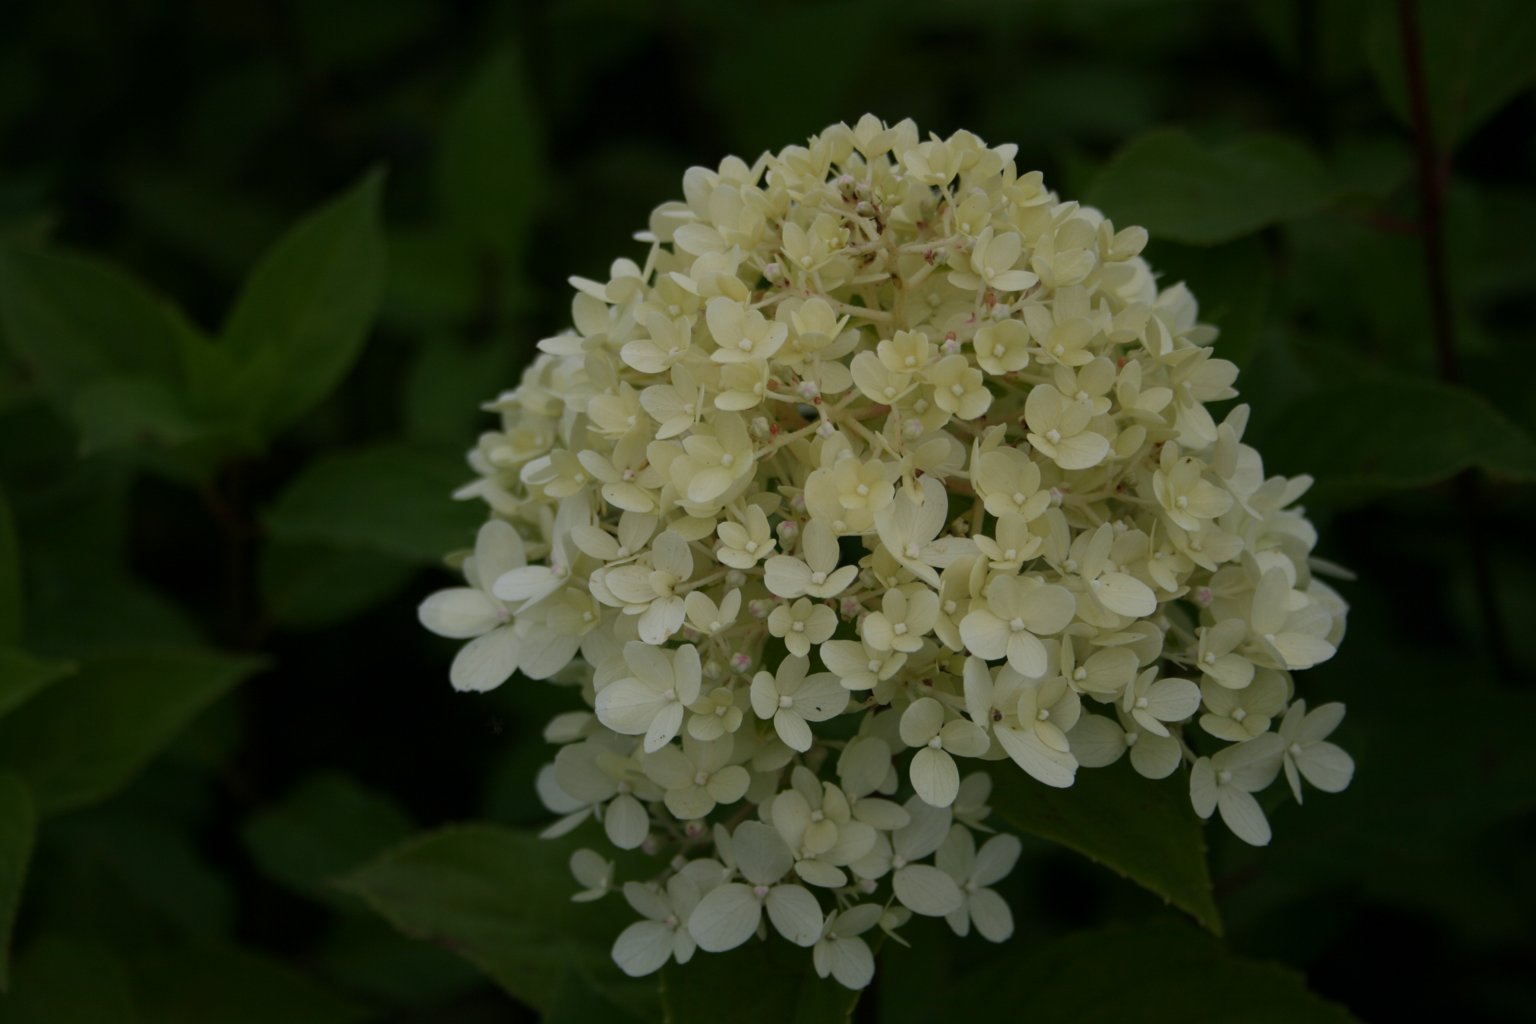 Hortensja bukietowa "Limelight" / Hydrangea paniculata "Limelight"